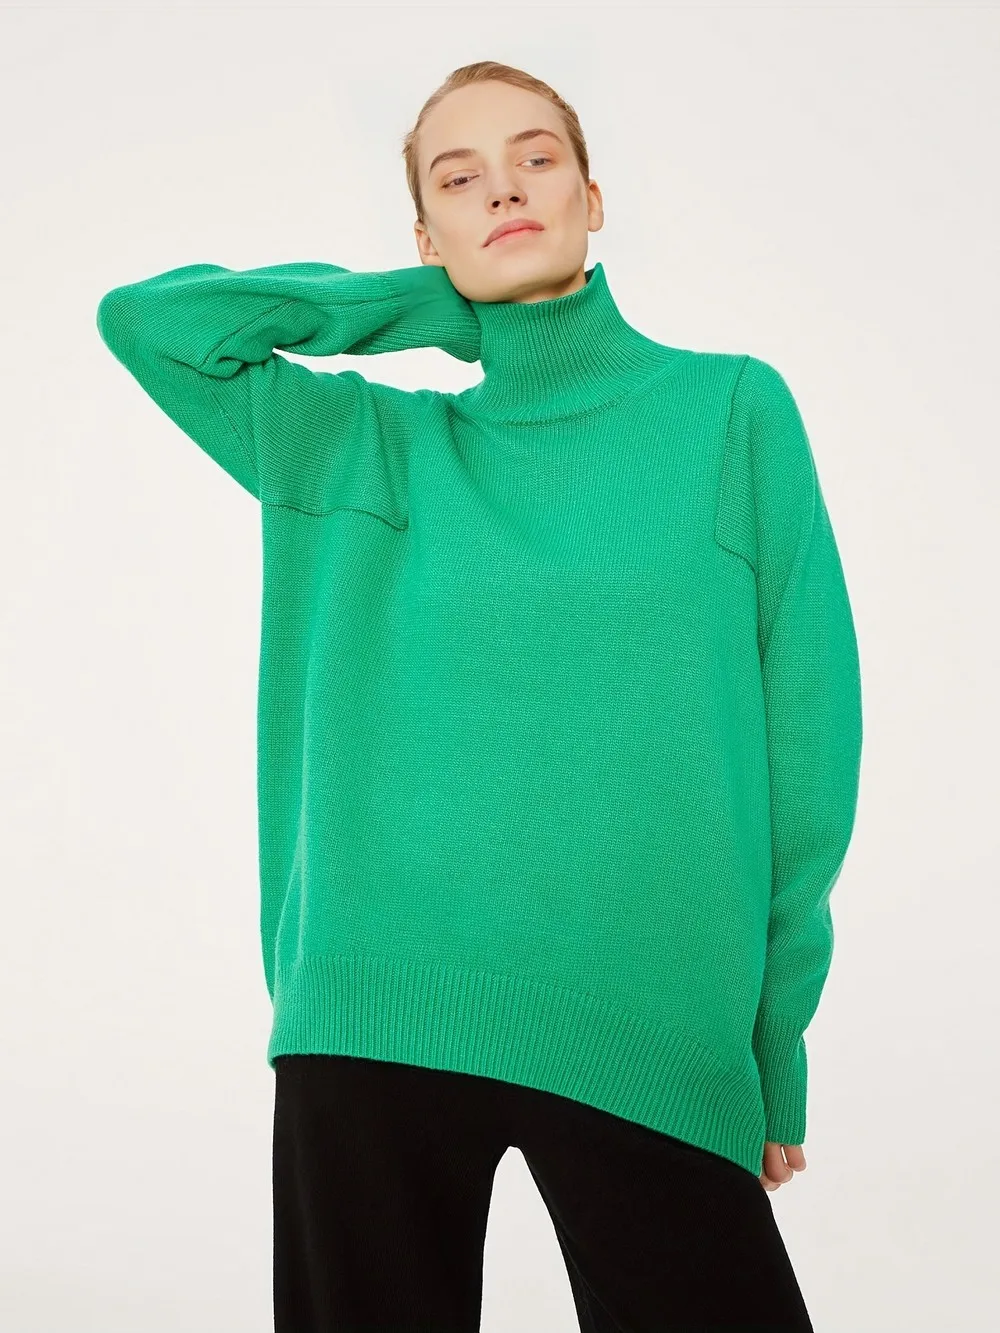 

Женский свободный свитер с высоким воротом Wixra, пуловер с длинным рукавом на осень и зиму и весну, классический джемпер, трикотажная одежда, хит продаж